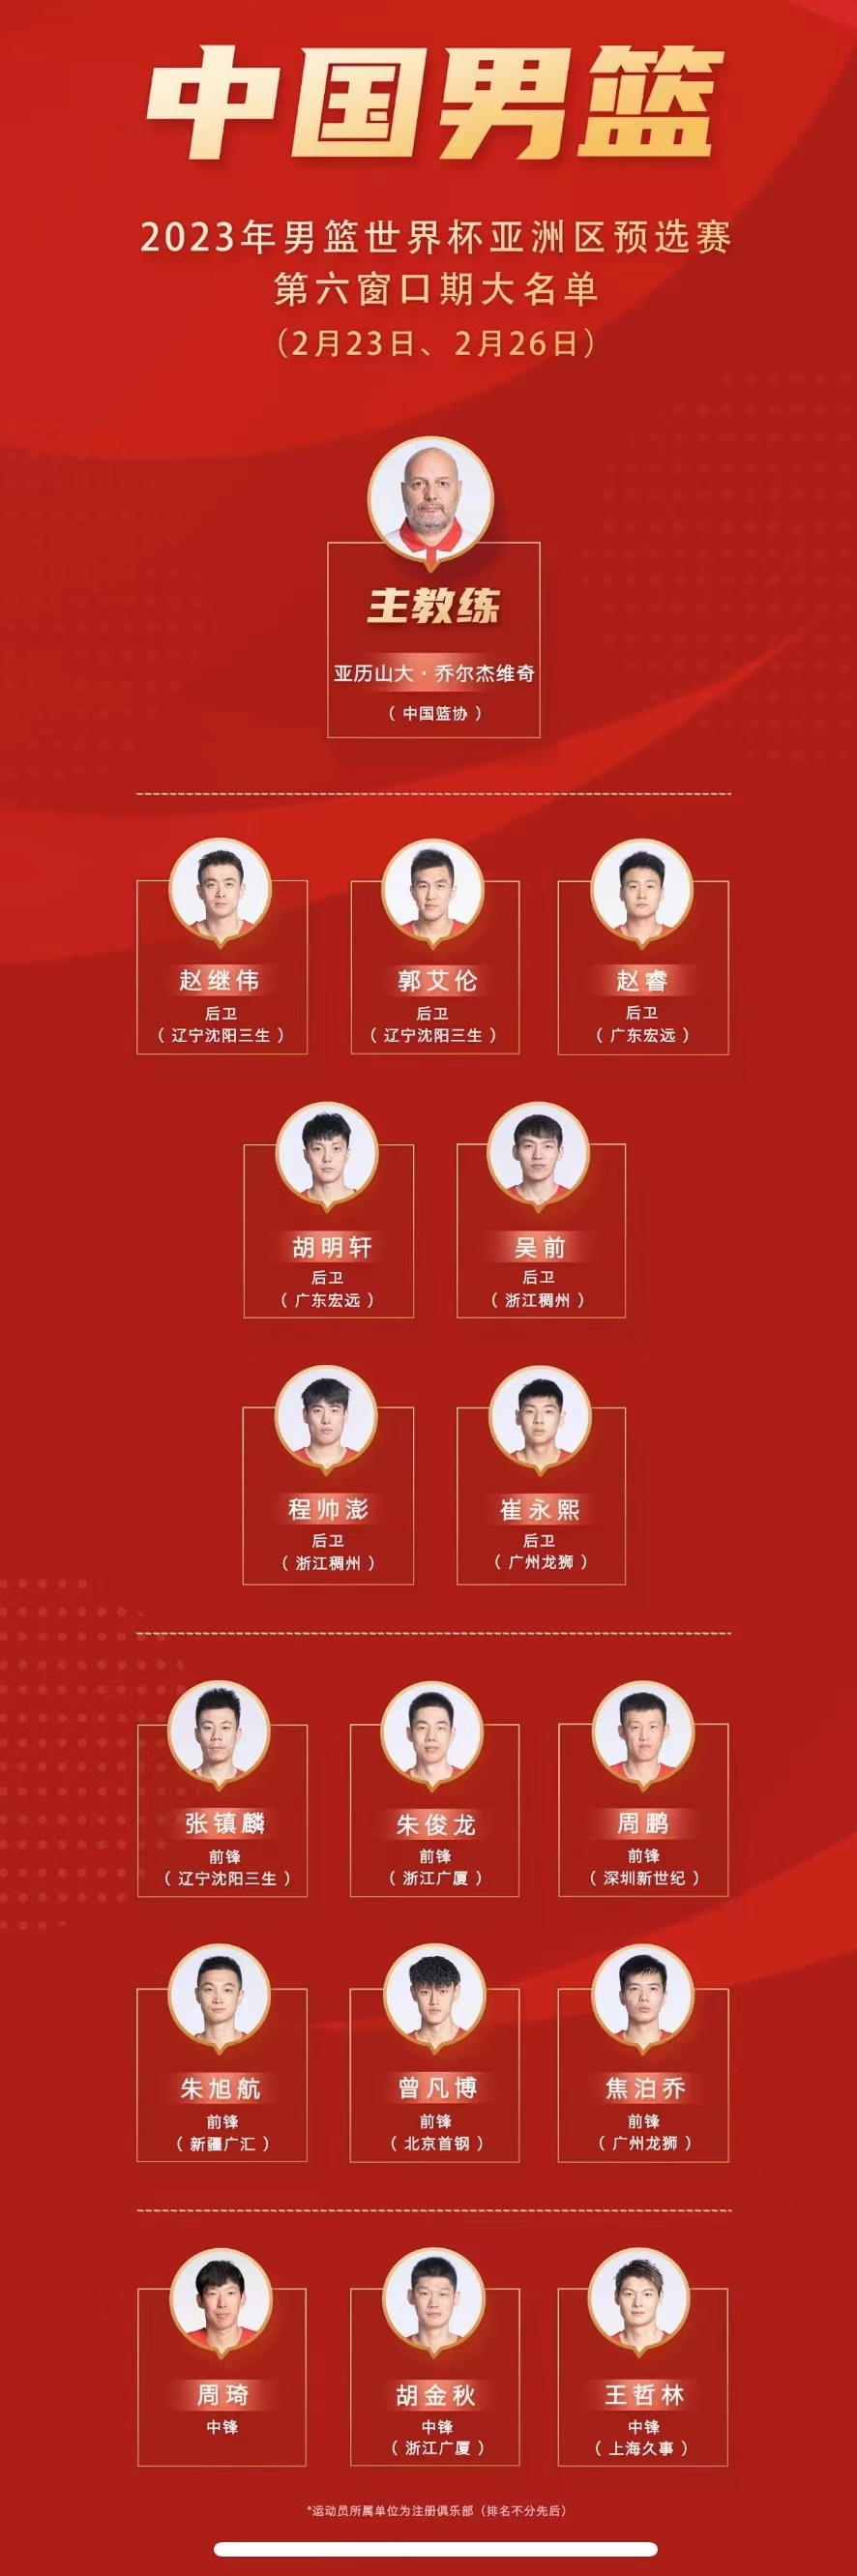 中国男篮世预赛16人大名单公布 第六窗口期首场比赛将于23日进行